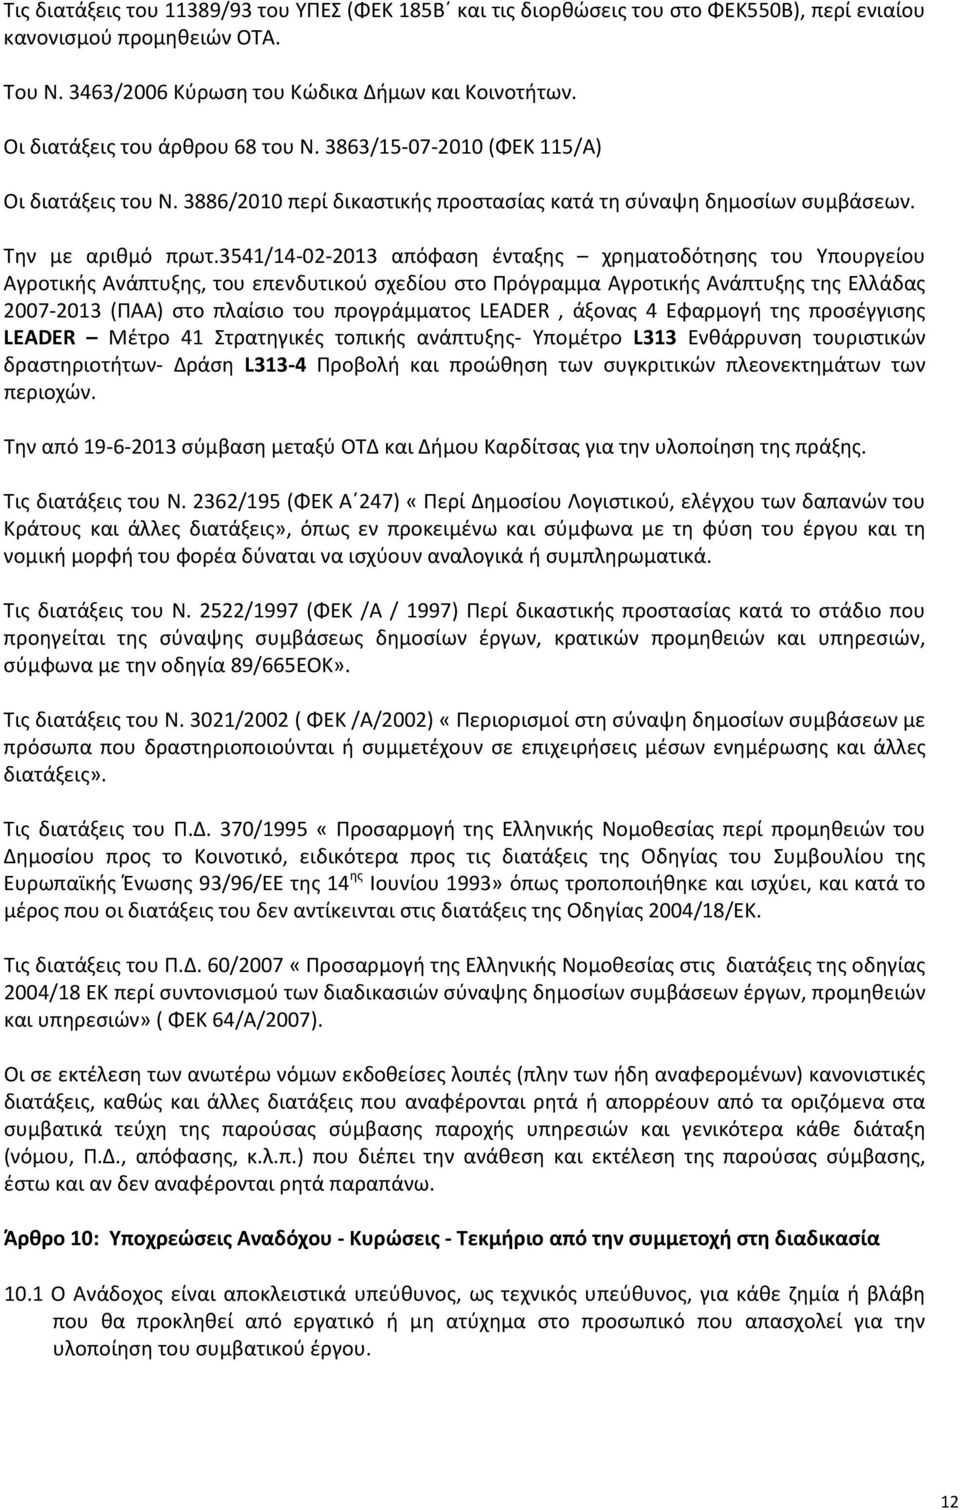 3541/14-02-2013 απόφαση ένταξης χρηματοδότησης του Υπουργείου Αγροτικής Ανάπτυξης, του επενδυτικού σχεδίου στο Πρόγραμμα Αγροτικής Ανάπτυξης της Ελλάδας 2007-2013 (ΠΑΑ) στο πλαίσιο του προγράμματος